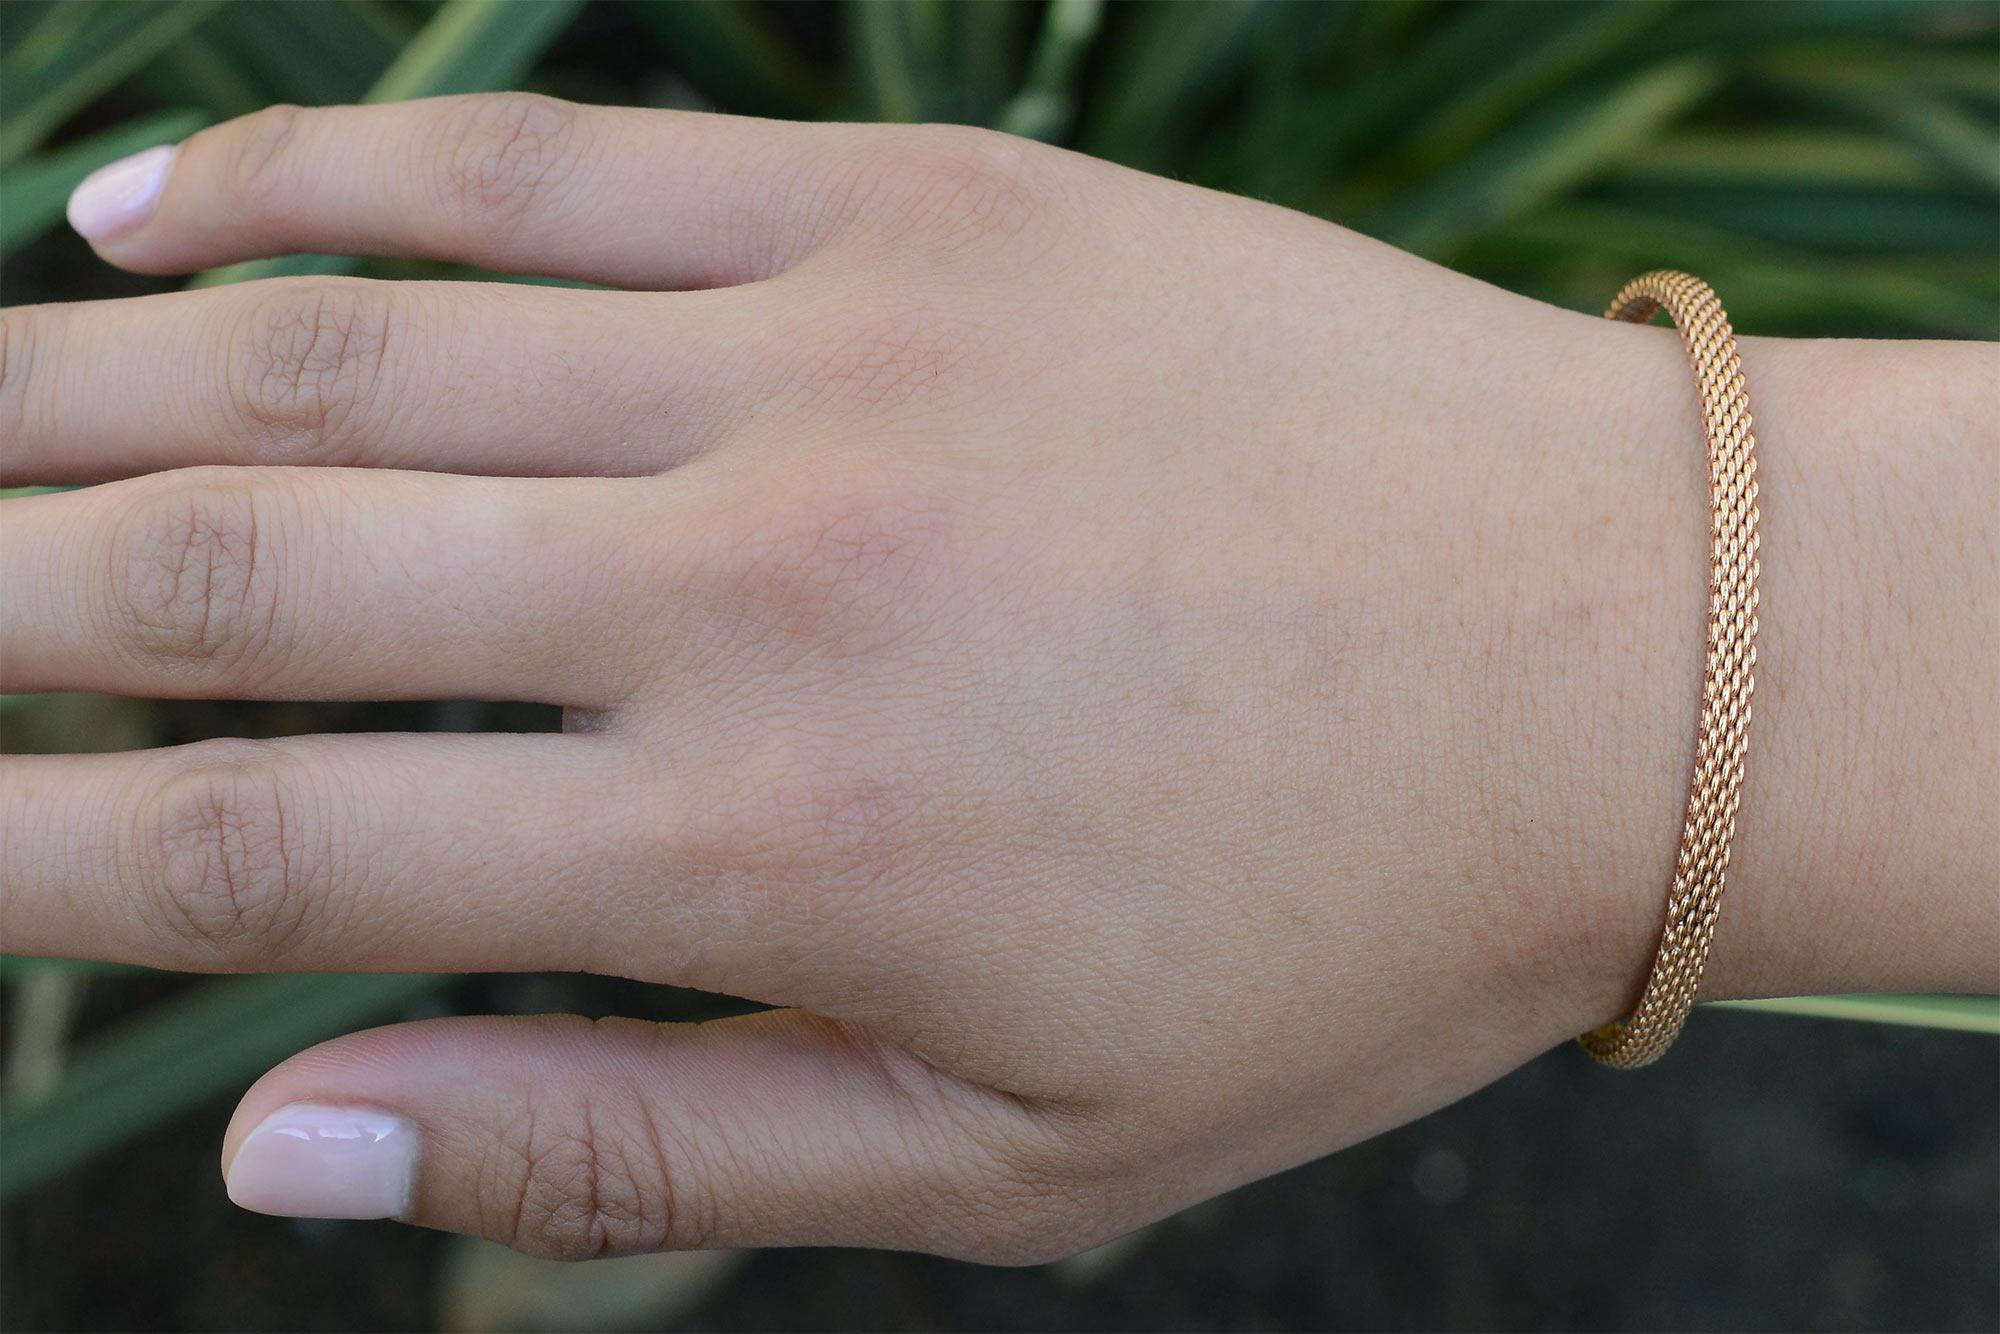 Un bracelet vintage incroyablement rare de Tiffany and Co. doté d'un cadre étroit qui se glisse confortablement sur le poignet. Le motif de maille caractéristique fait le tour complet du bracelet et est composé d'or rose 18 carats. Il s'agit d'un